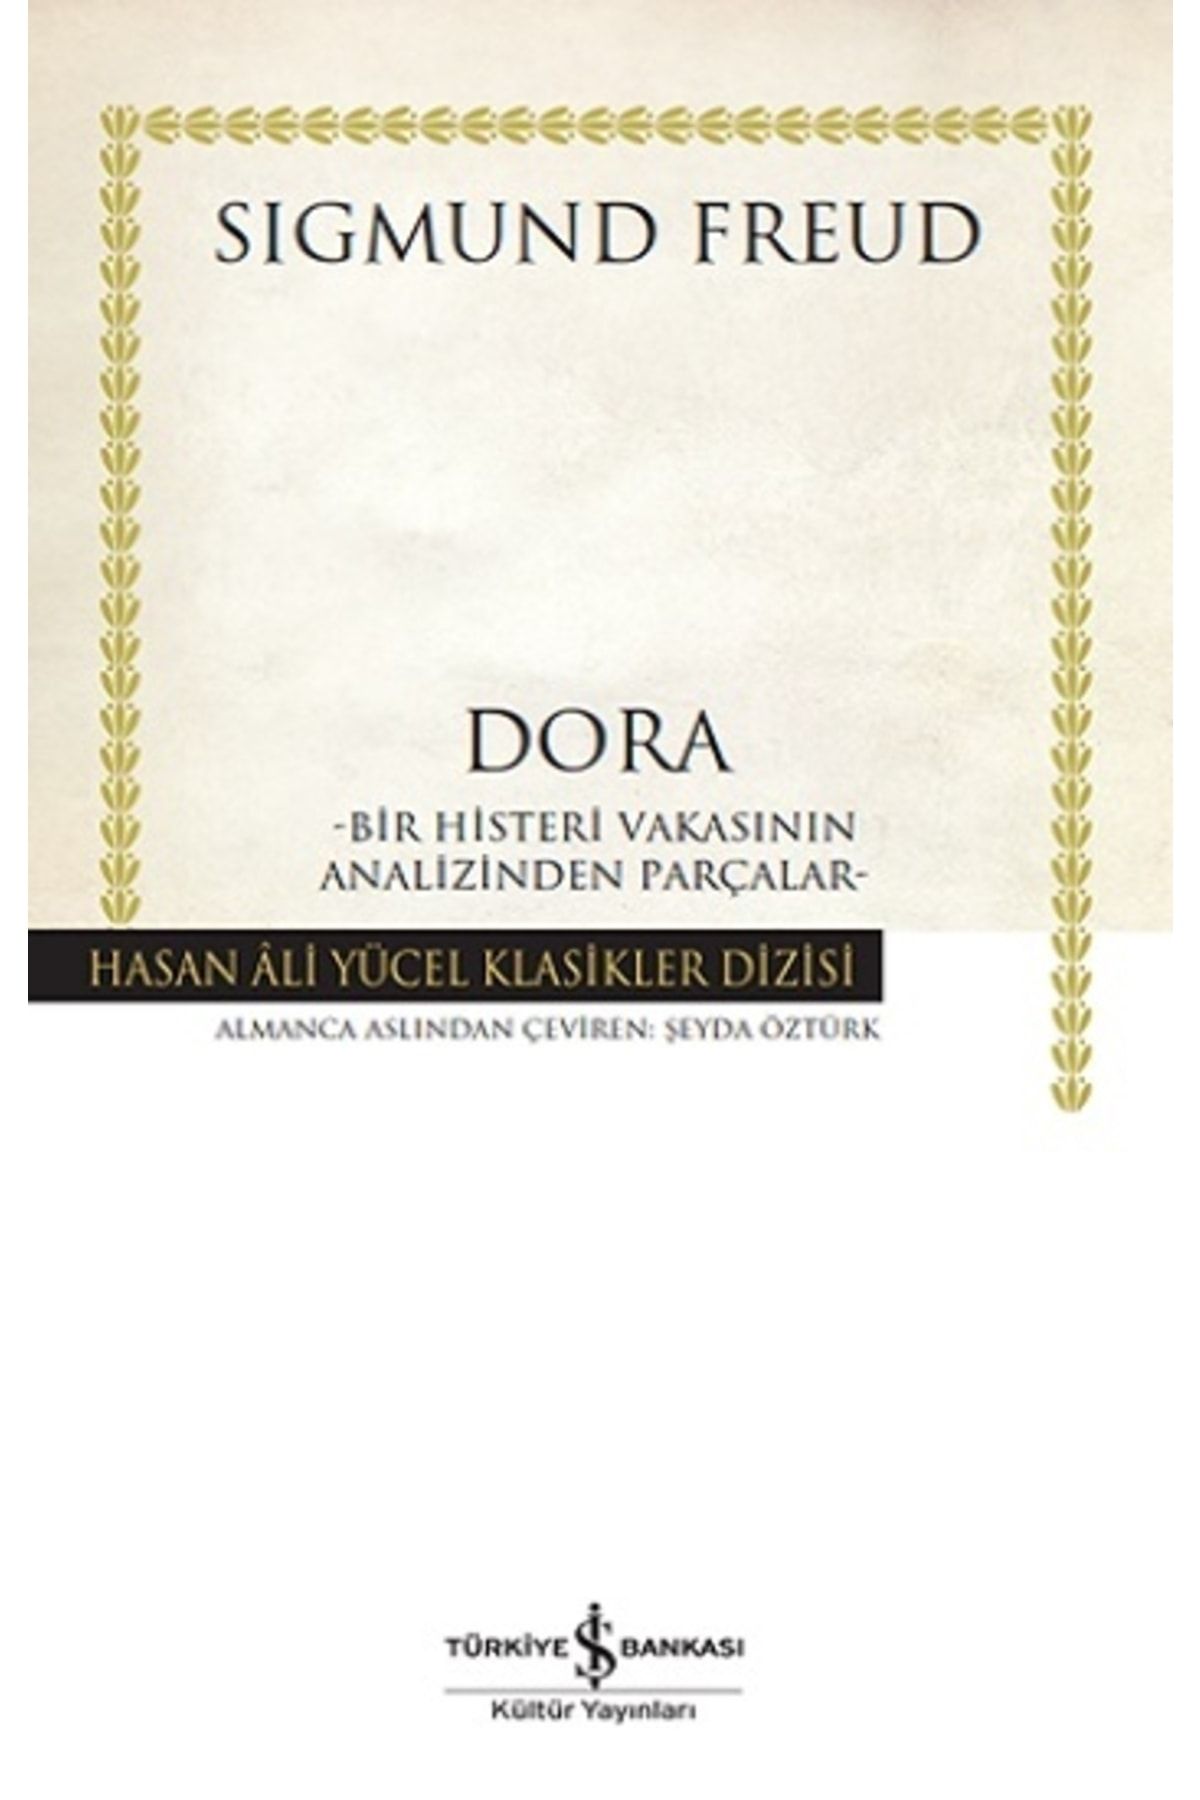 Türkiye İş Bankası Kültür Yayınları Dora – Bir Histeri Vakasinin Analizinden Parçalar - (ciltli) Sigmund Freud